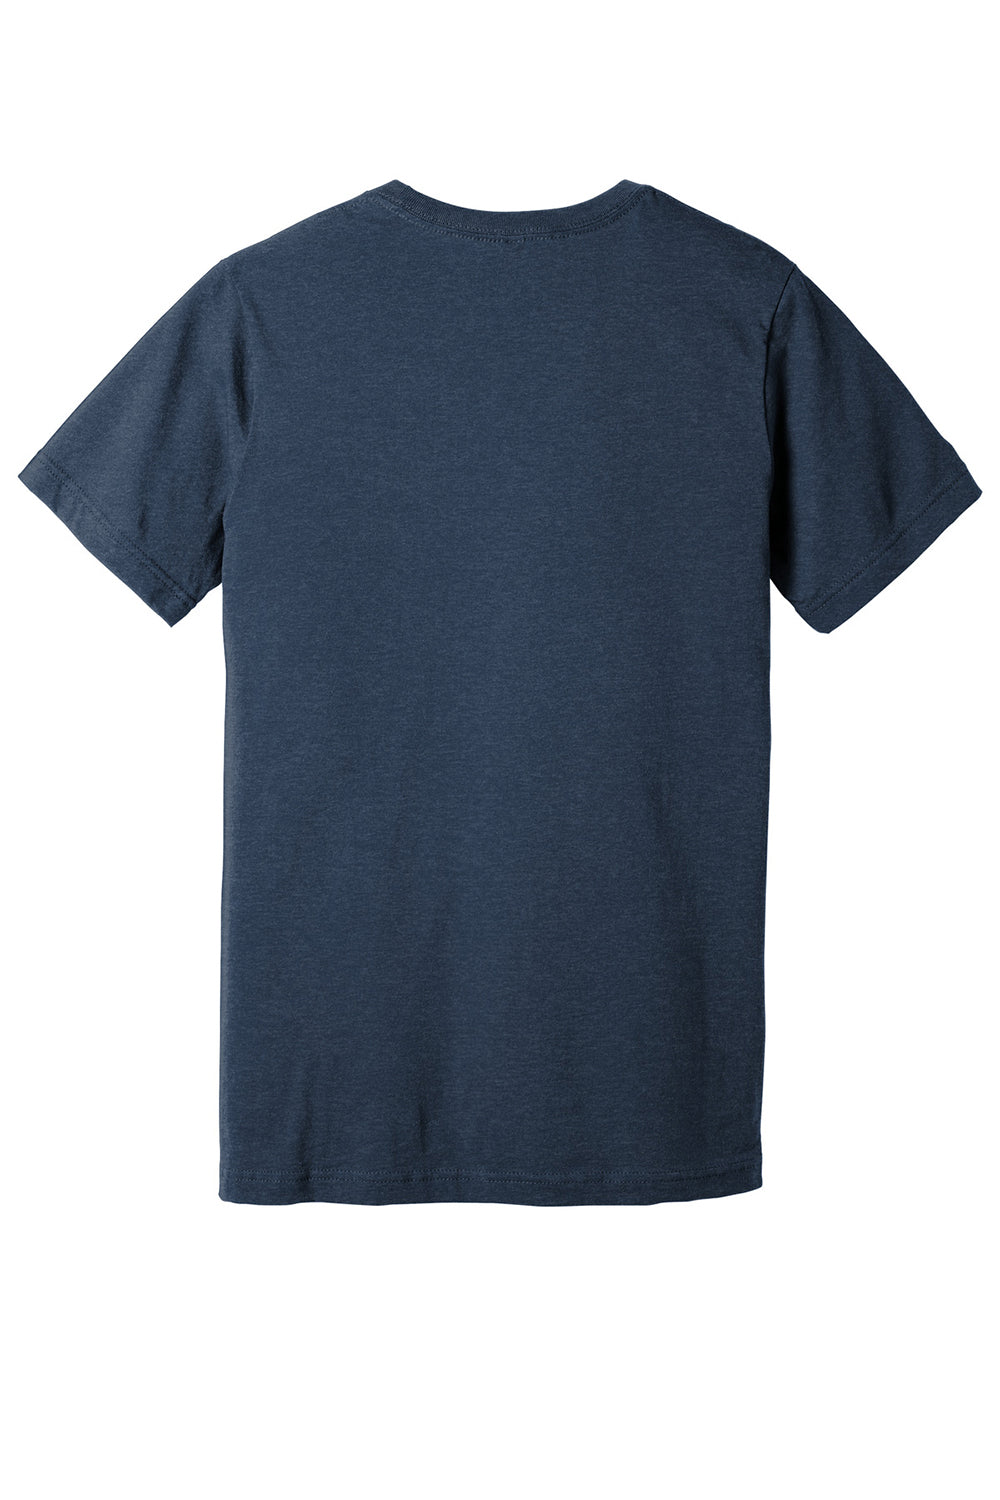 Bella + Canvas BC3005CVC Mens CVC Short Sleeve V-Neck T-Shirt Heather Navy Blue Flat Back